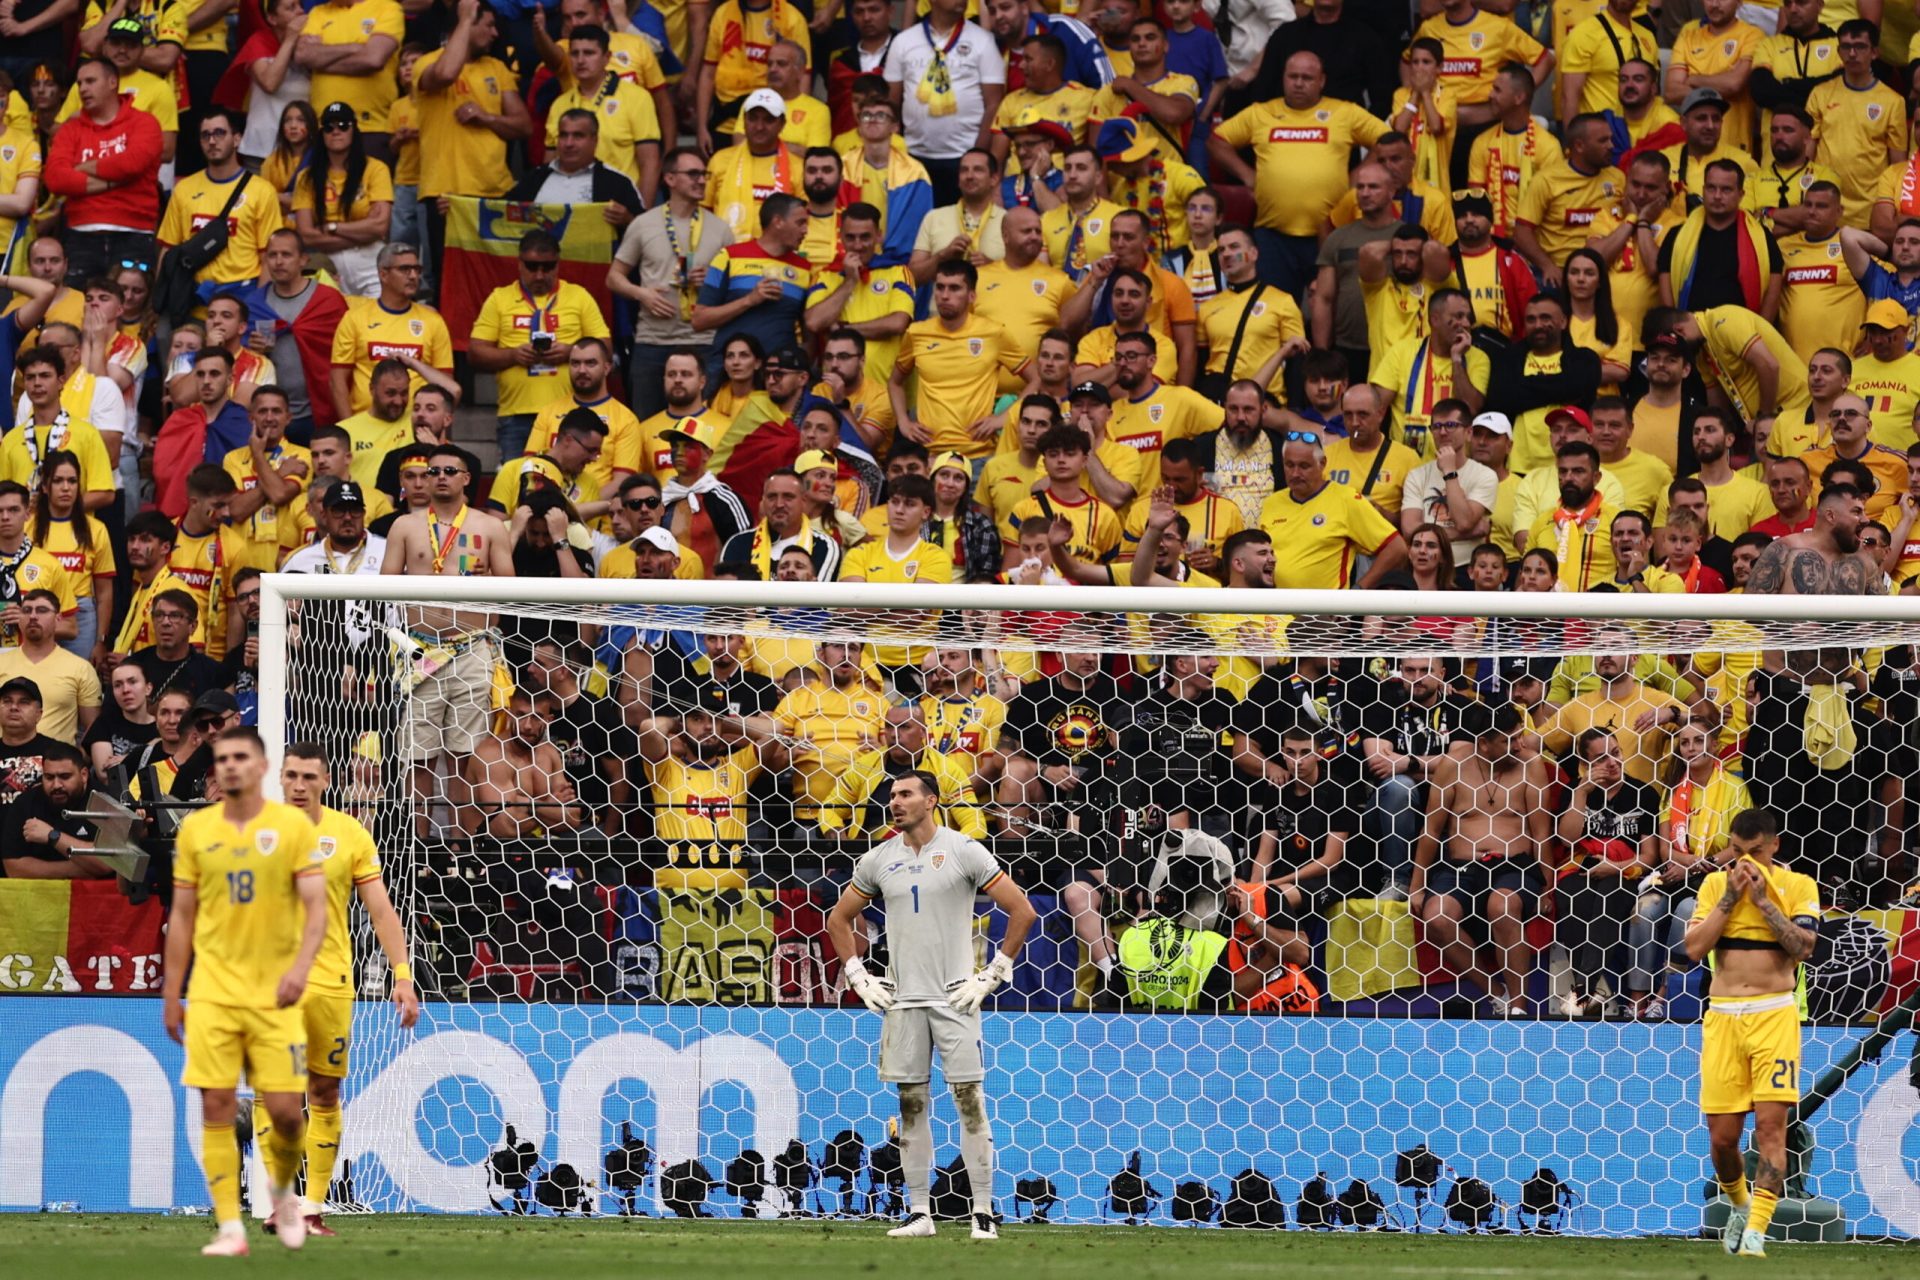 Az “Elképesztő dominancia: Hollandia 3-0-ra legyőzte Romániát a nyolcaddöntőben